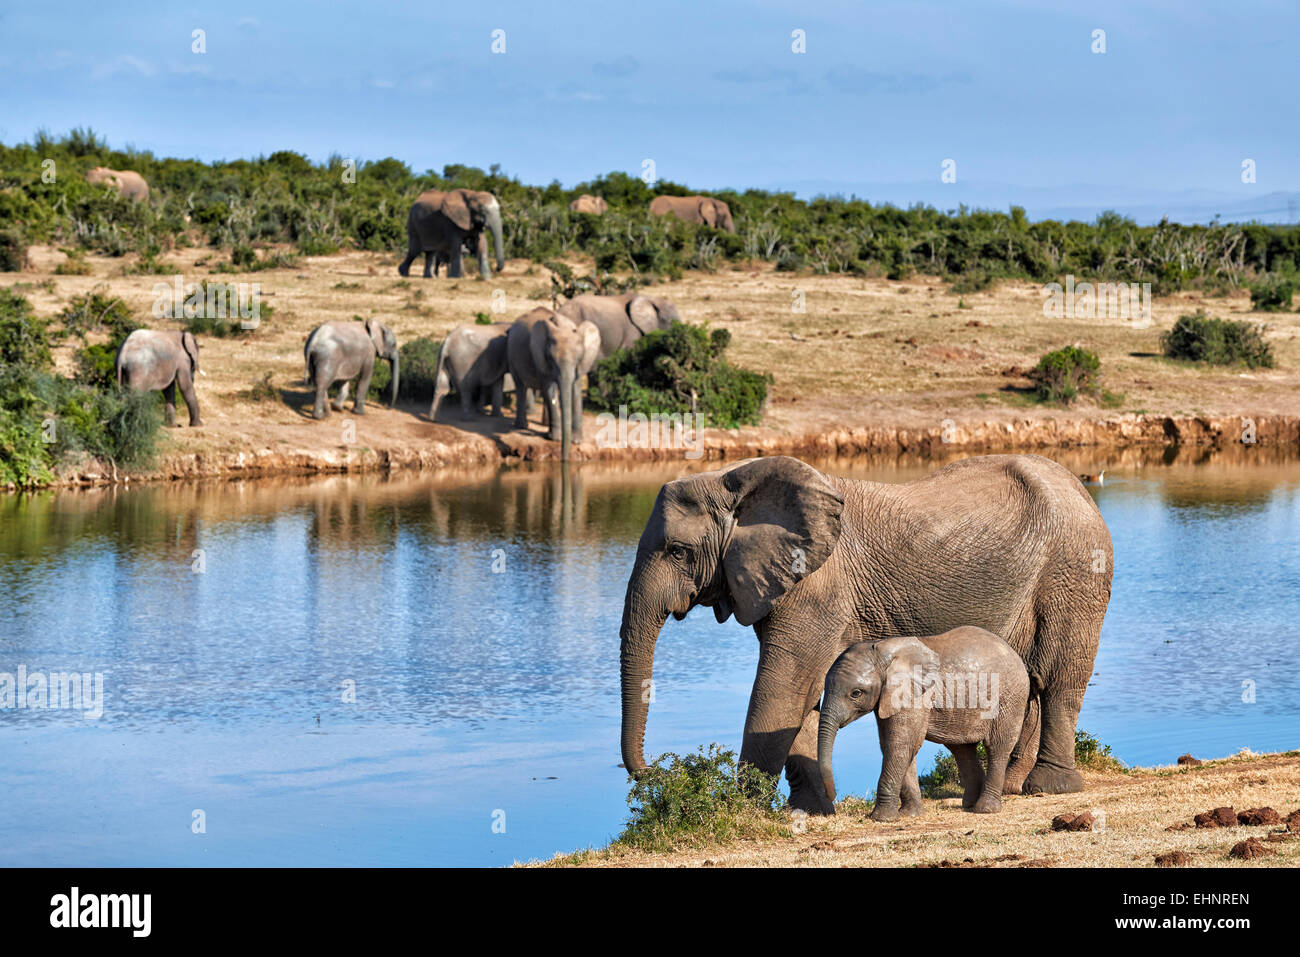 Bush africain les éléphants aux jeunes (Loxodonta africana), l'Addo Elephant National Park, Eastern Cape, Afrique du Sud Banque D'Images